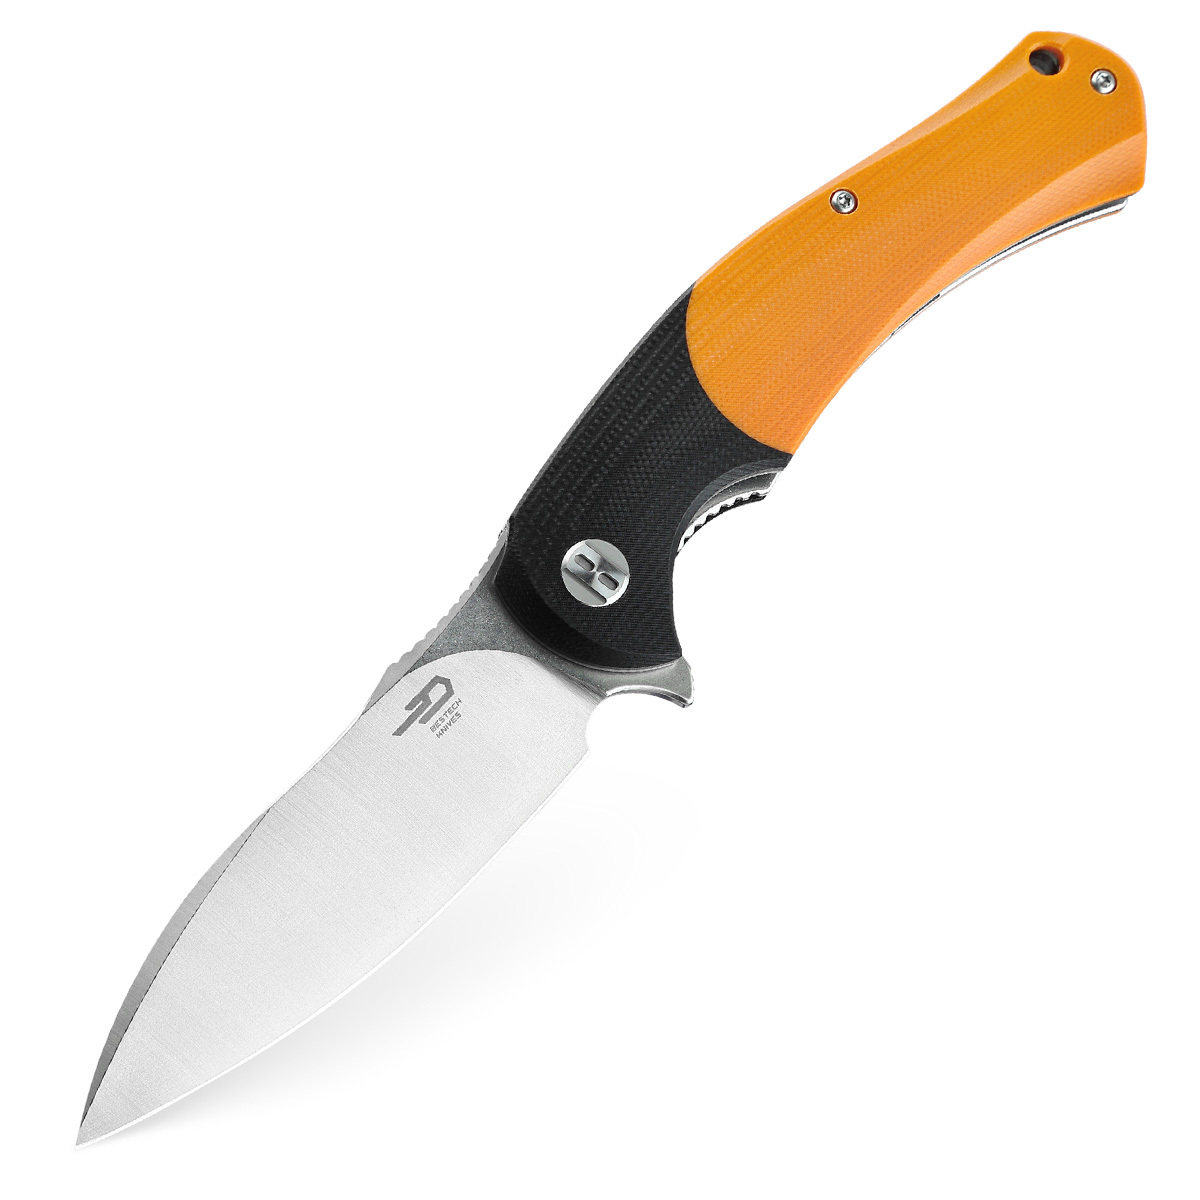 Складной нож Bestech Penguin, сталь D2, рукоять G10, оранжевый складной нож bestech swift сталь d2 micarta